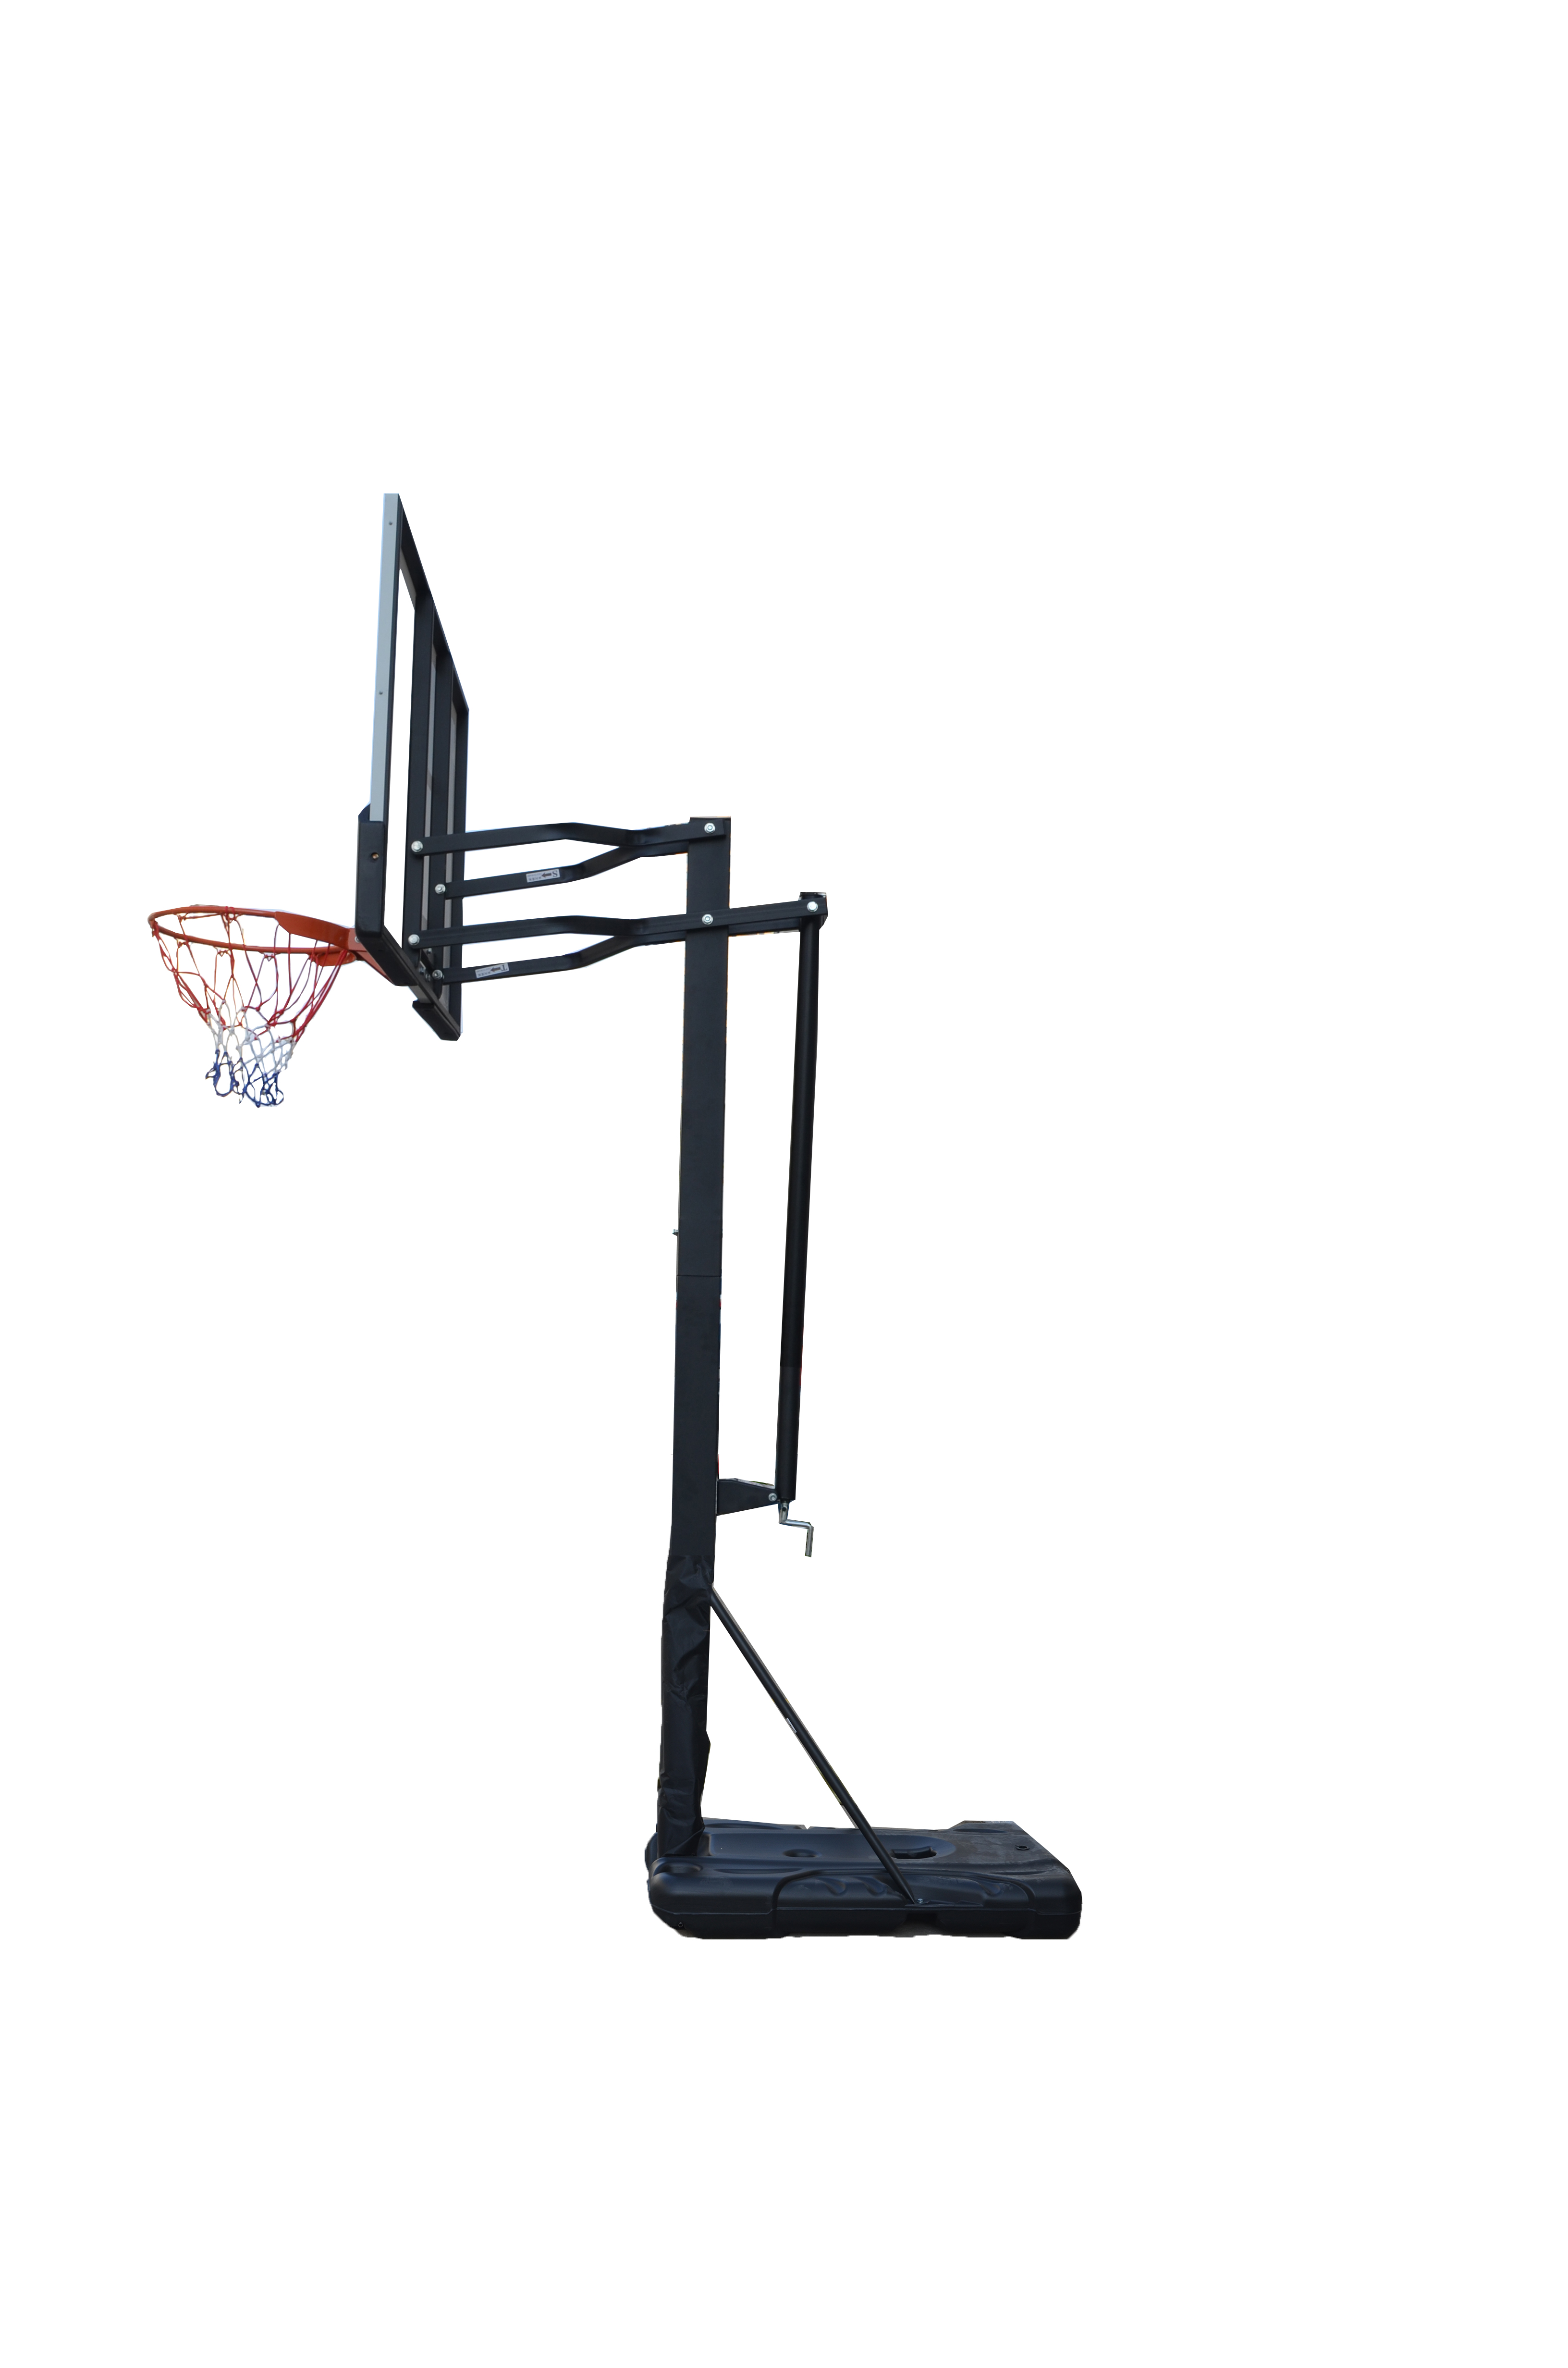 Мобильная баскетбольная стойка Proxima 60", поликарбонат S023